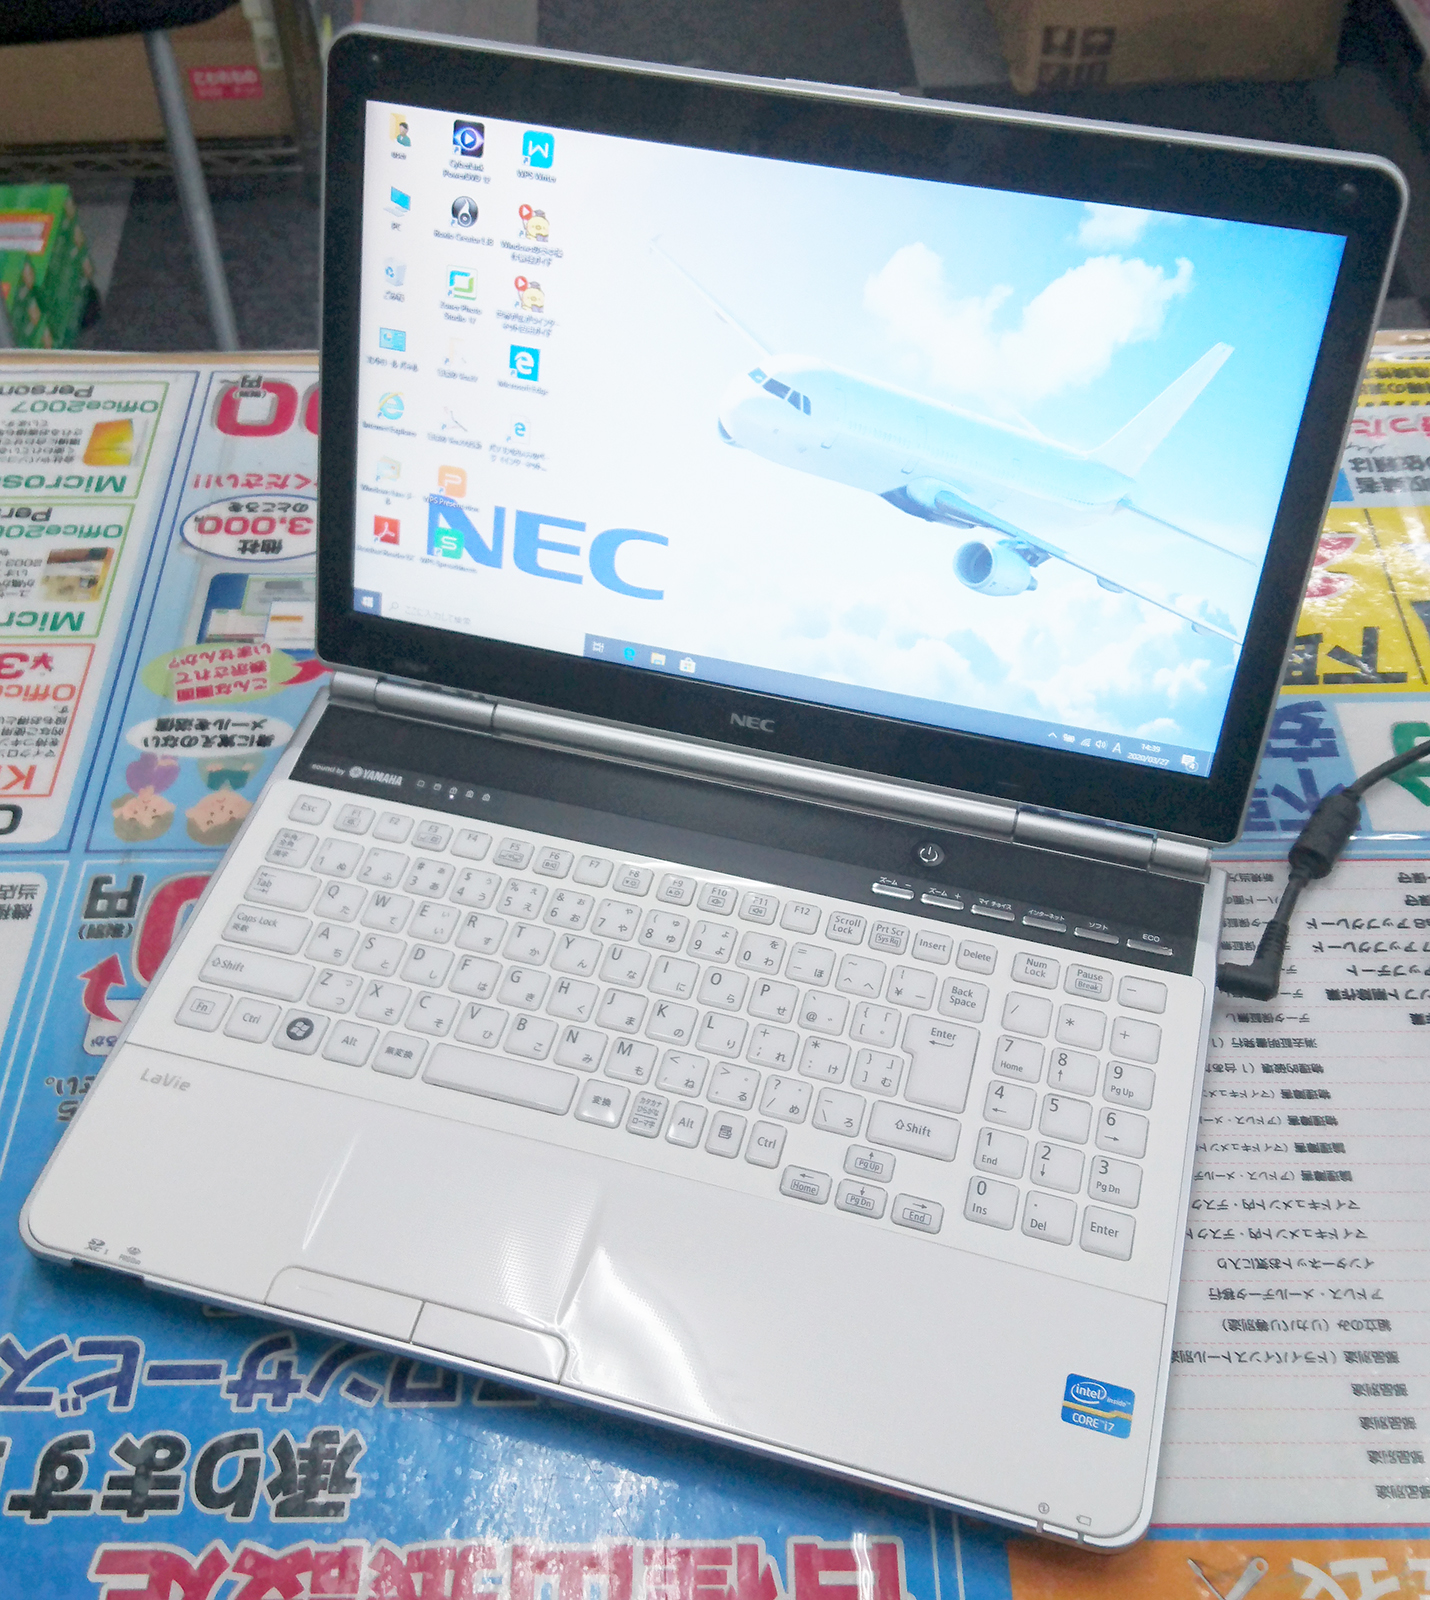 ノートパソコン PC LAVIE NEC ホワイトWindows10 15.6型